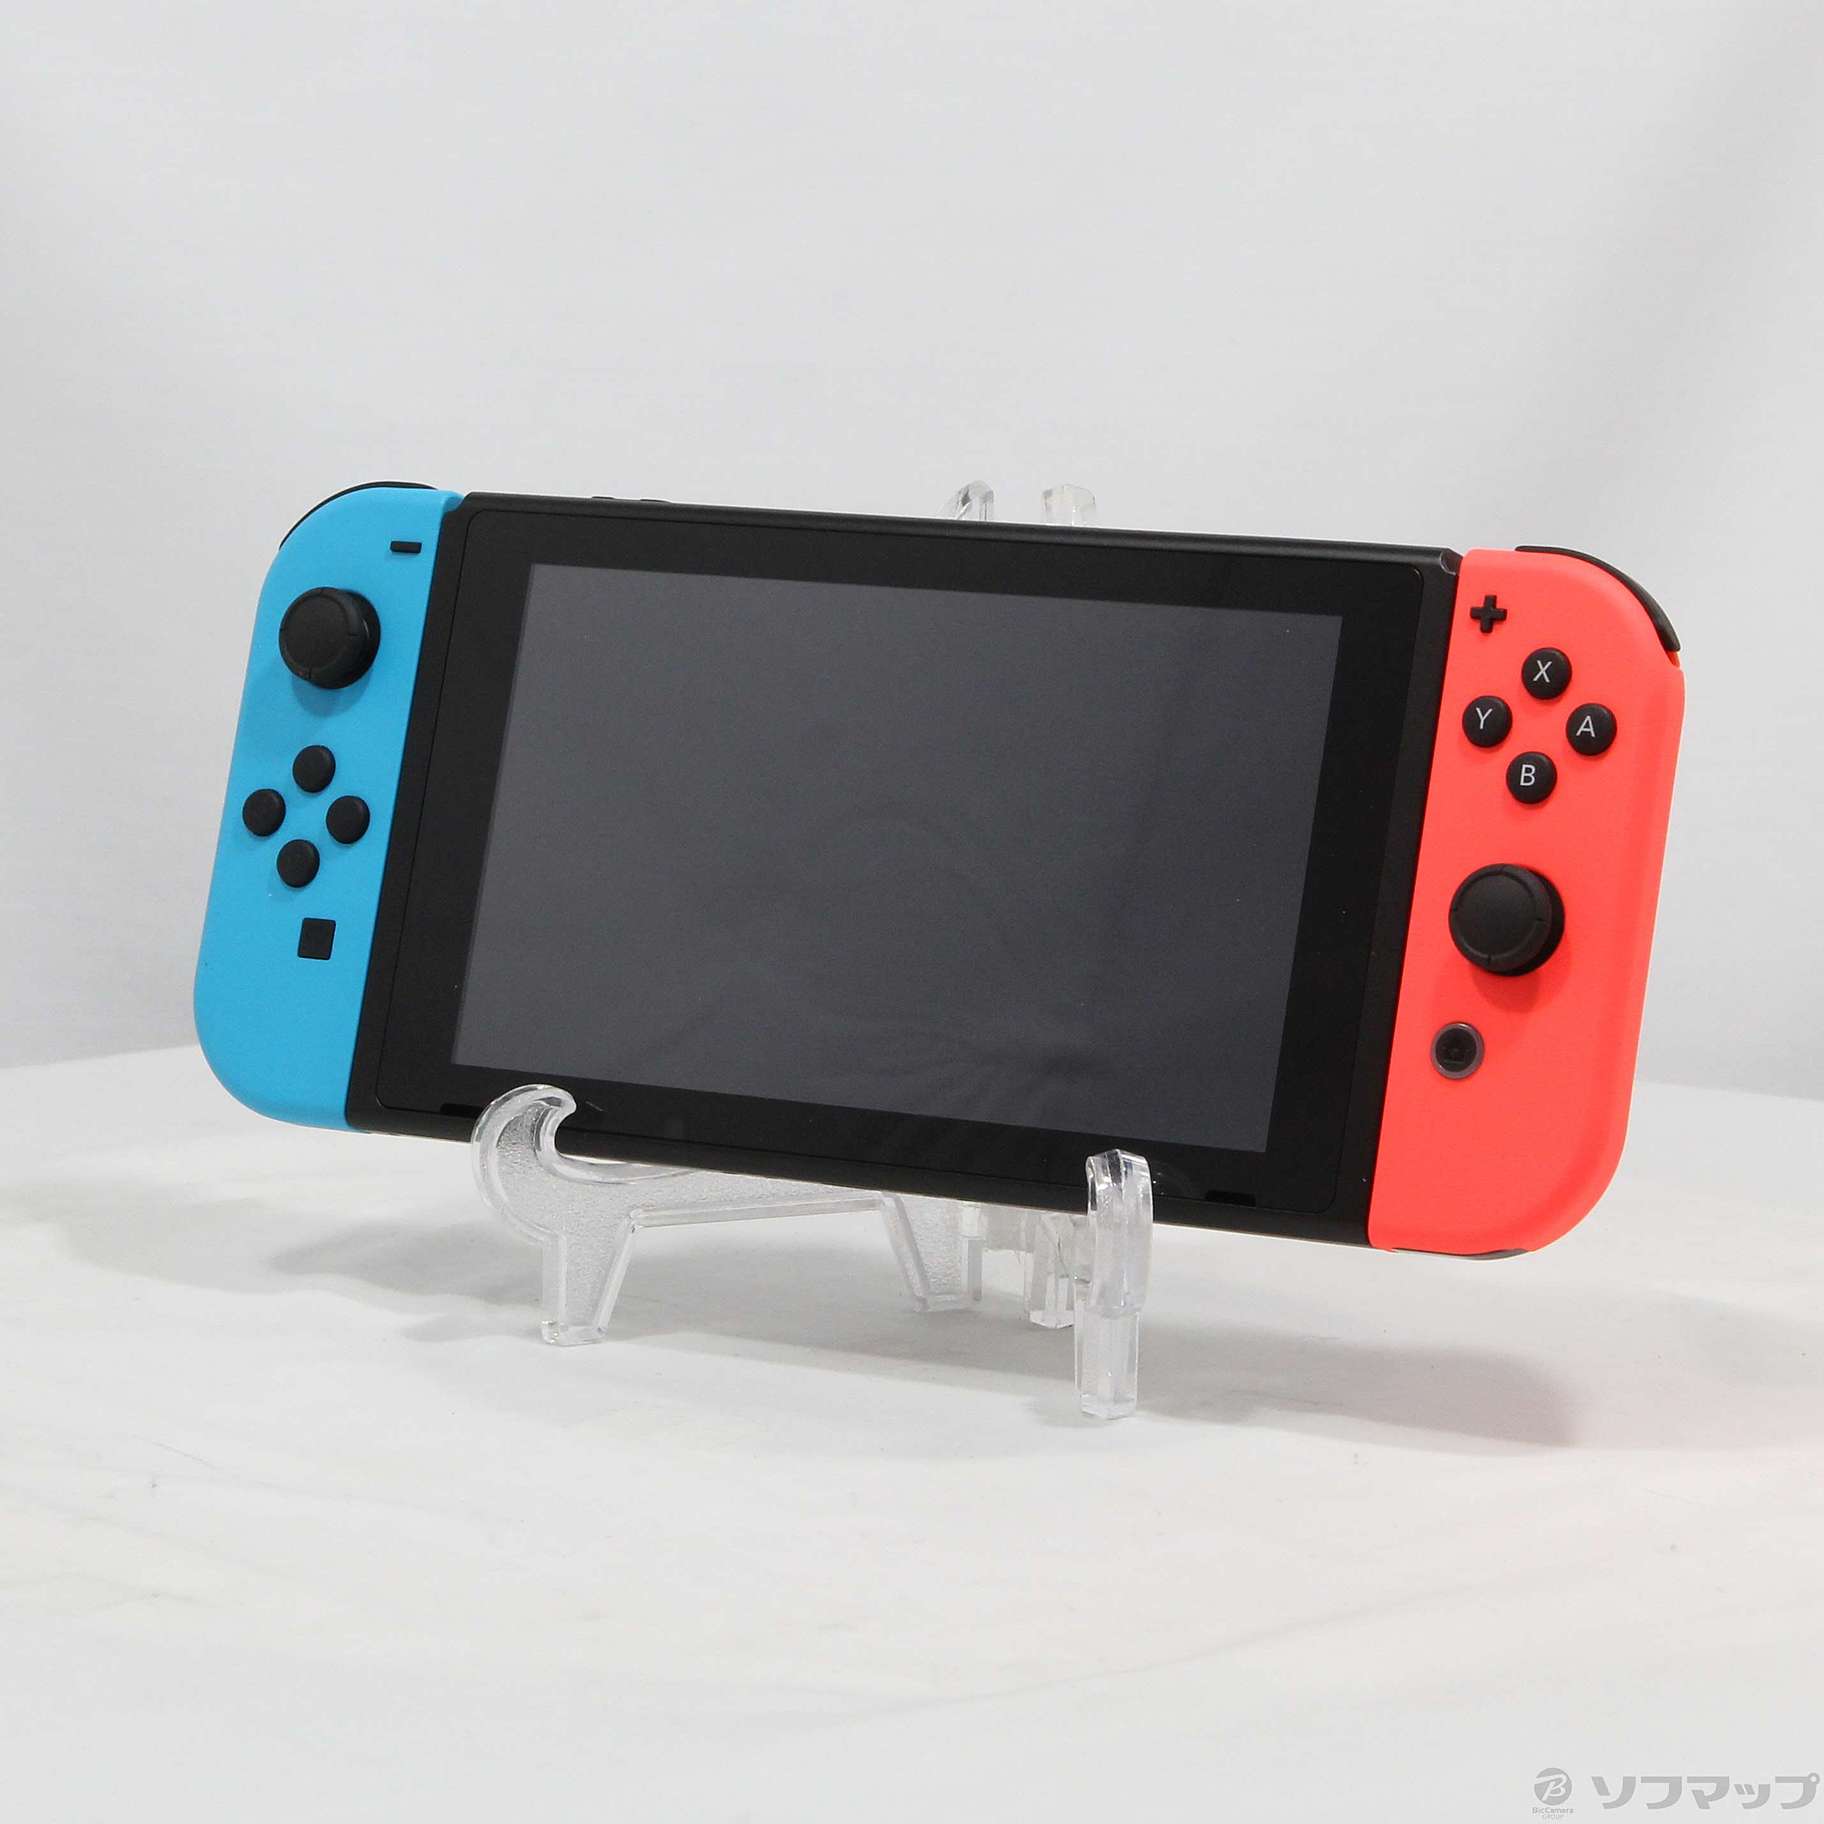 Nintendo Switch Nintendo Switch Sports セット